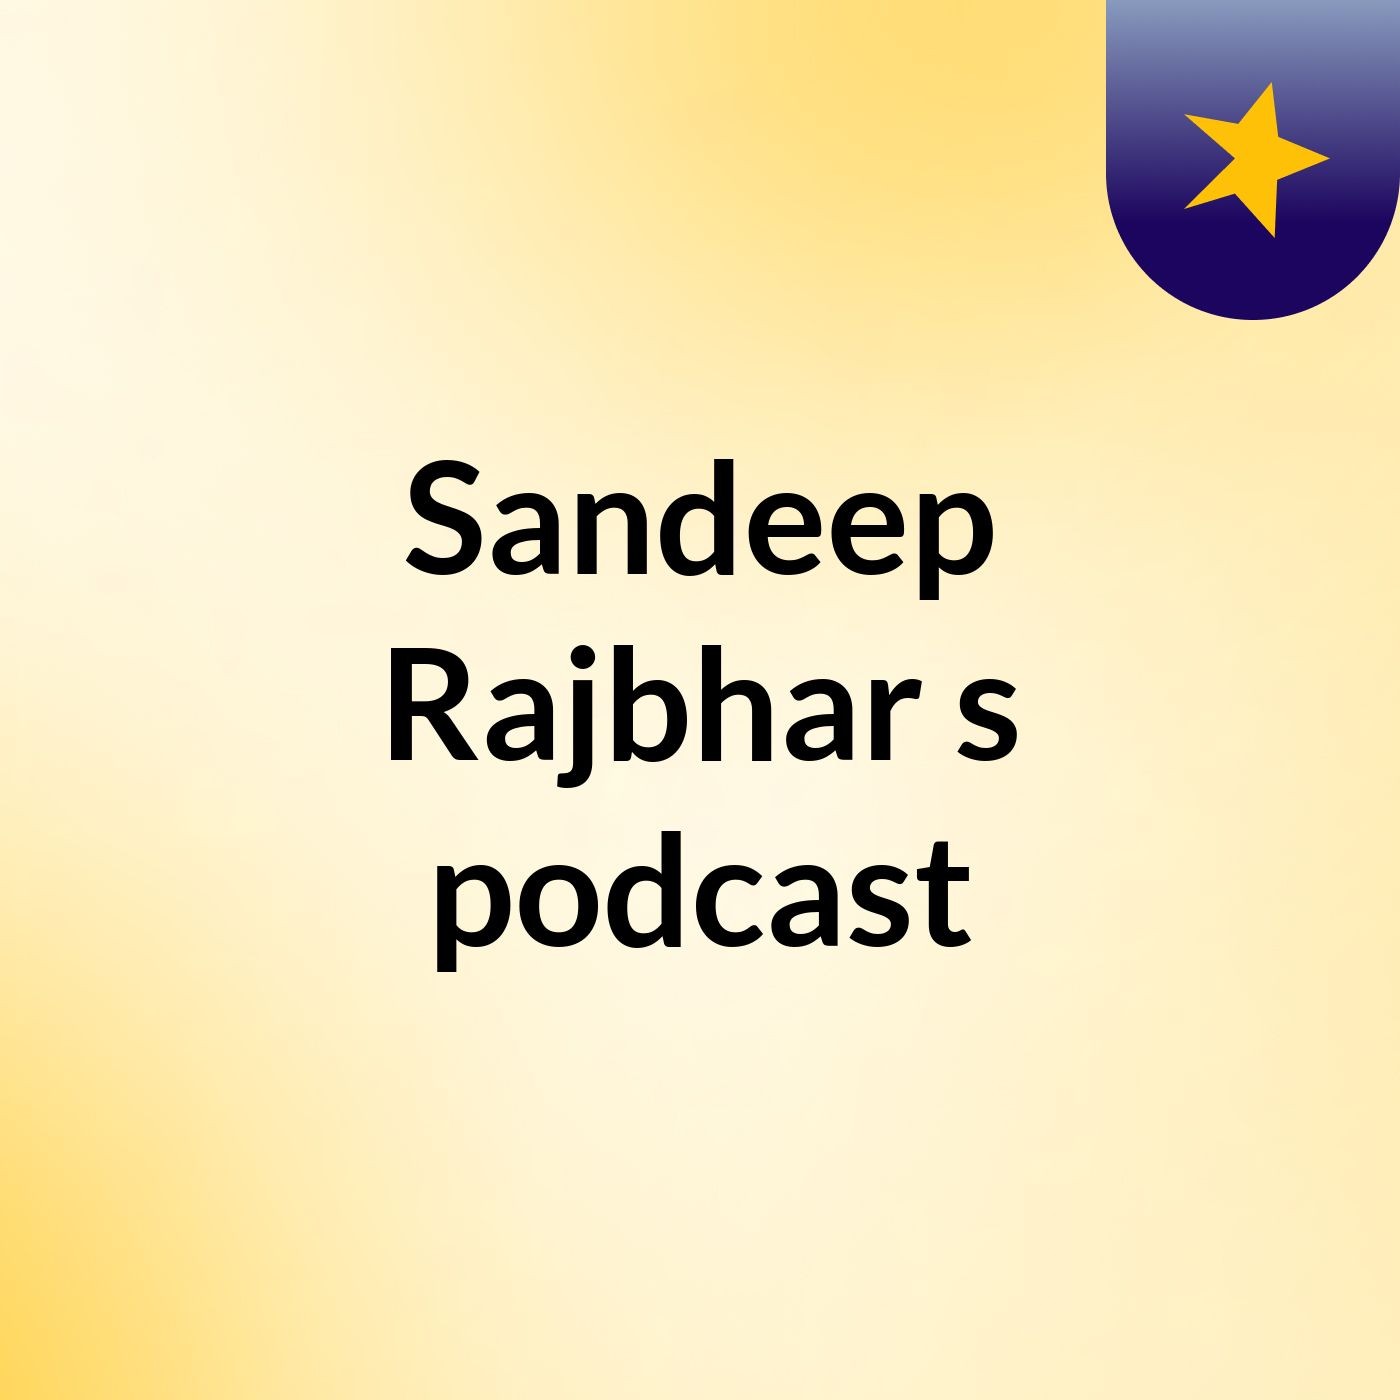 Sandeep Rajbhar's podcast